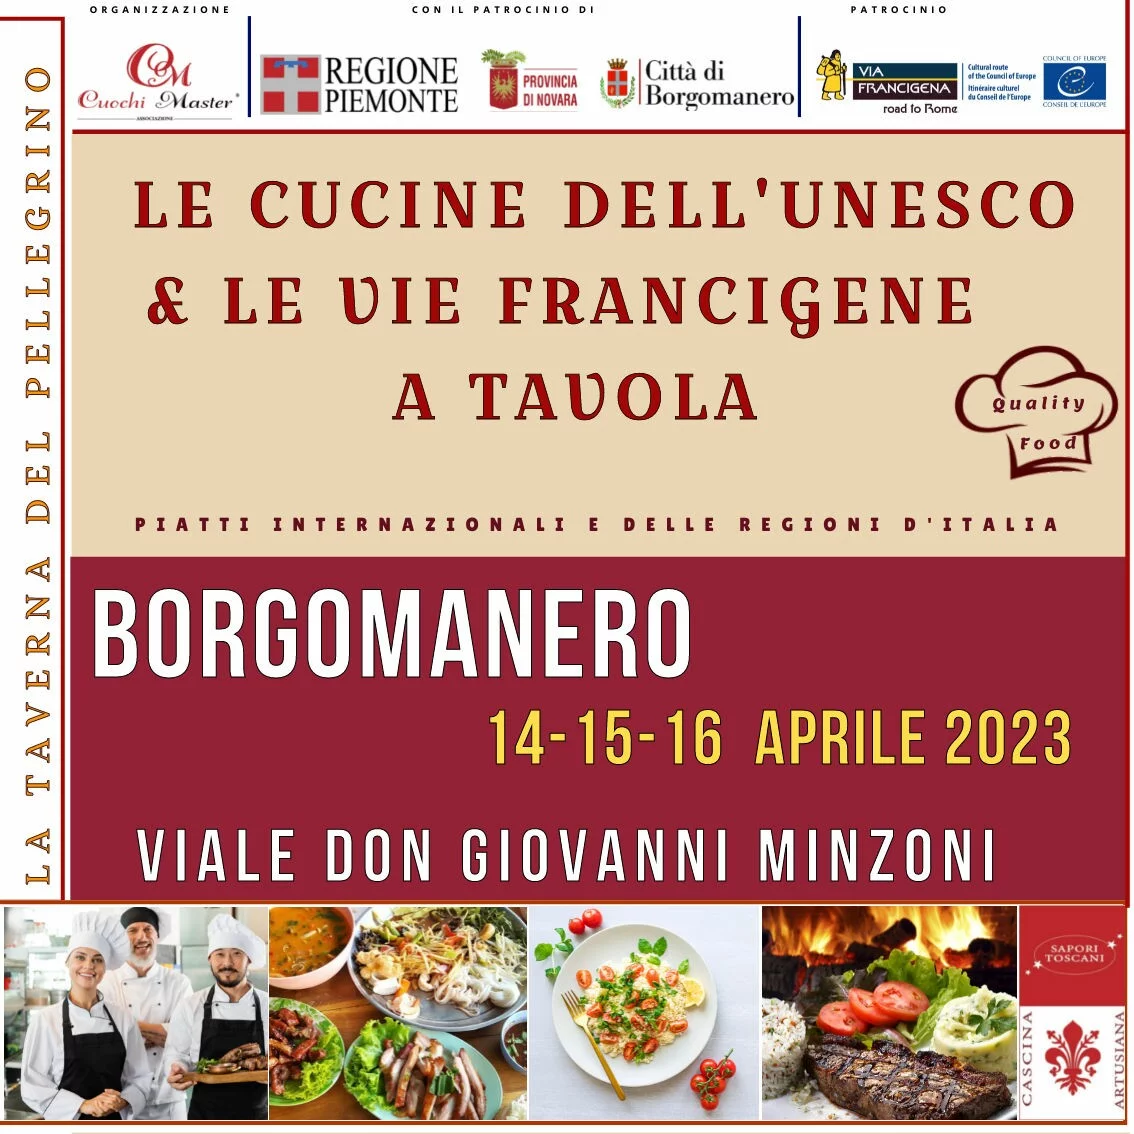 Le Cucine dell’Unesco & Le Vie Francigene a Tavola - Borgomanero